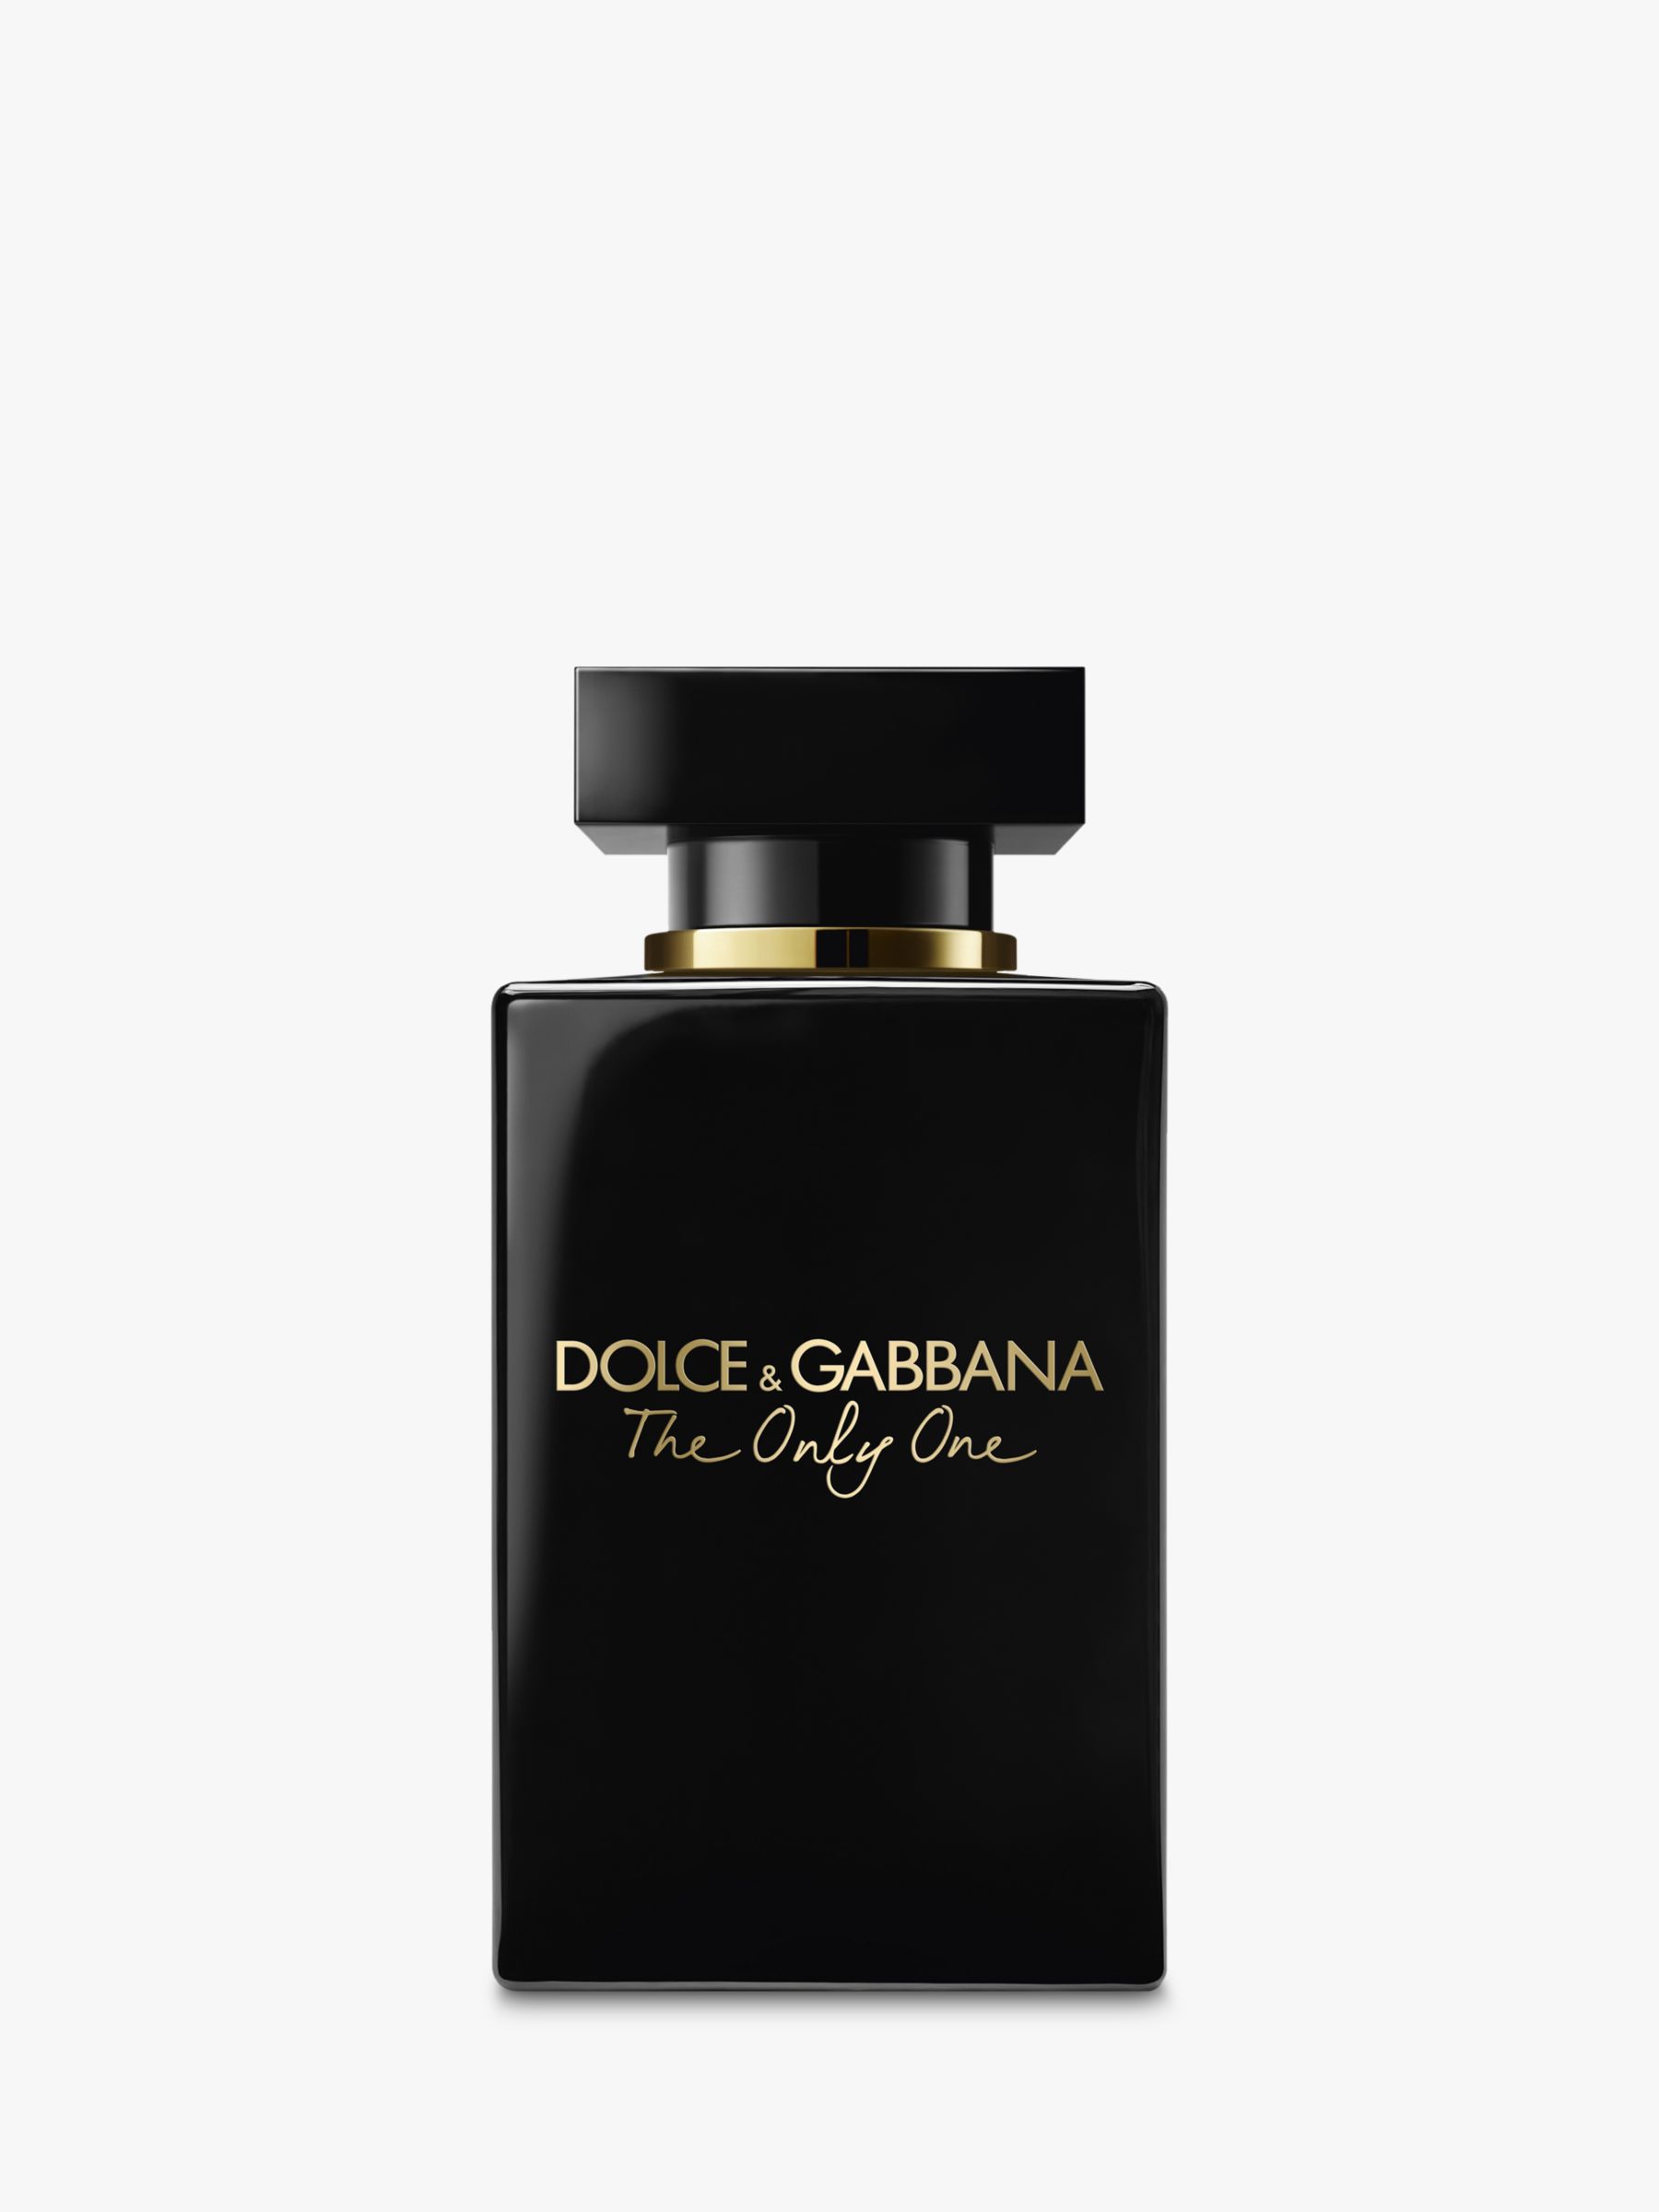 & Gabbana The One Eau de Parfum Intense, 30ml at John & Partners